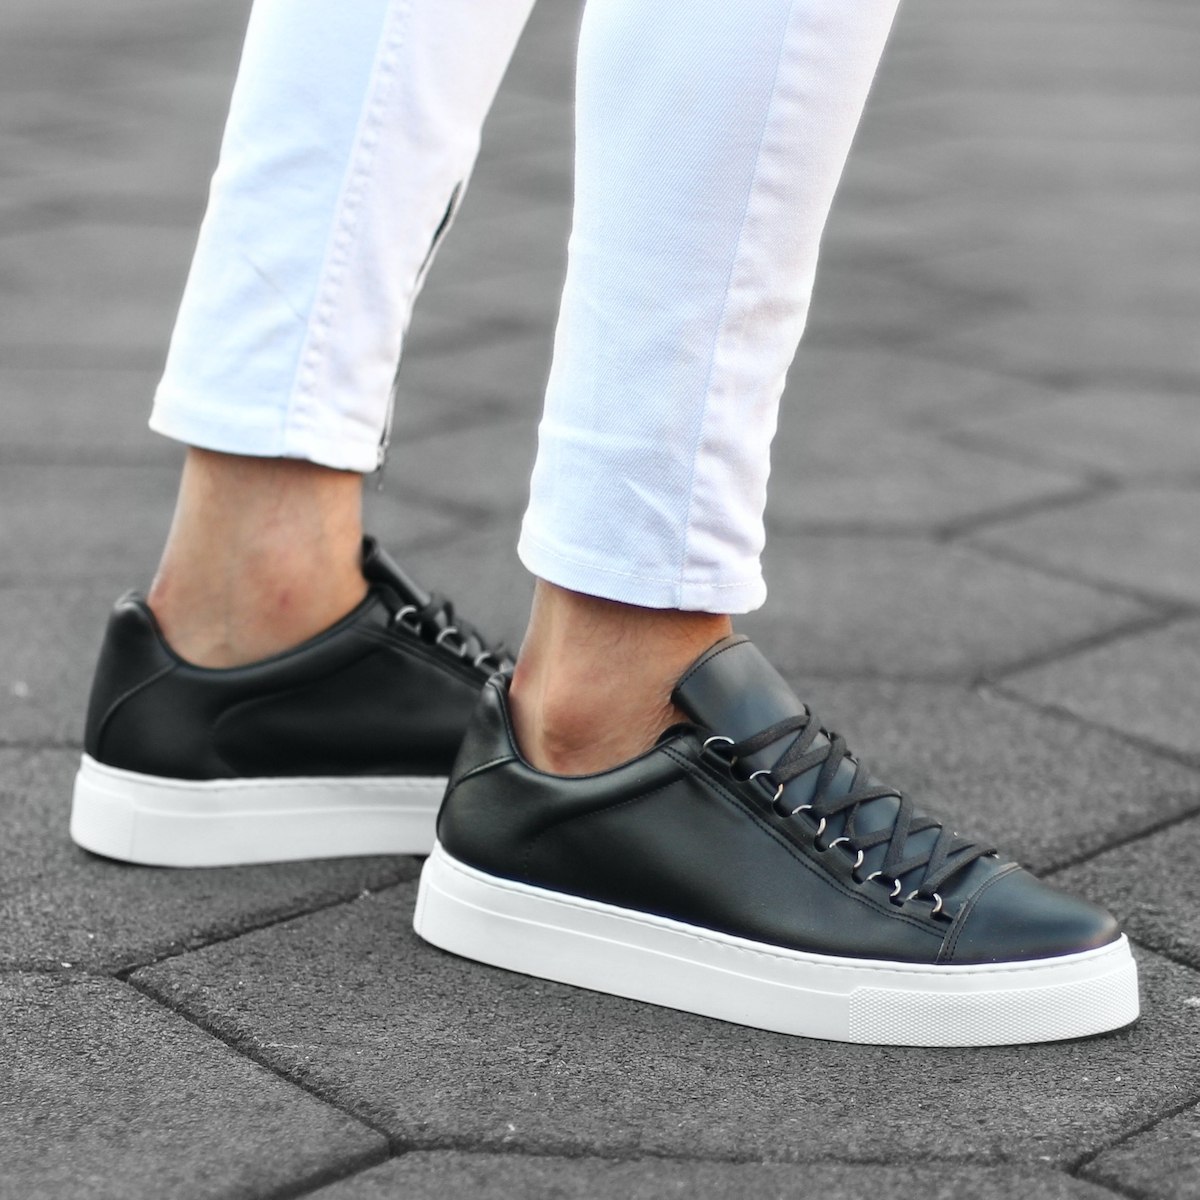 Herren Low Top Sneakers Outdoor Schuhe in schwarz-weiss - 1